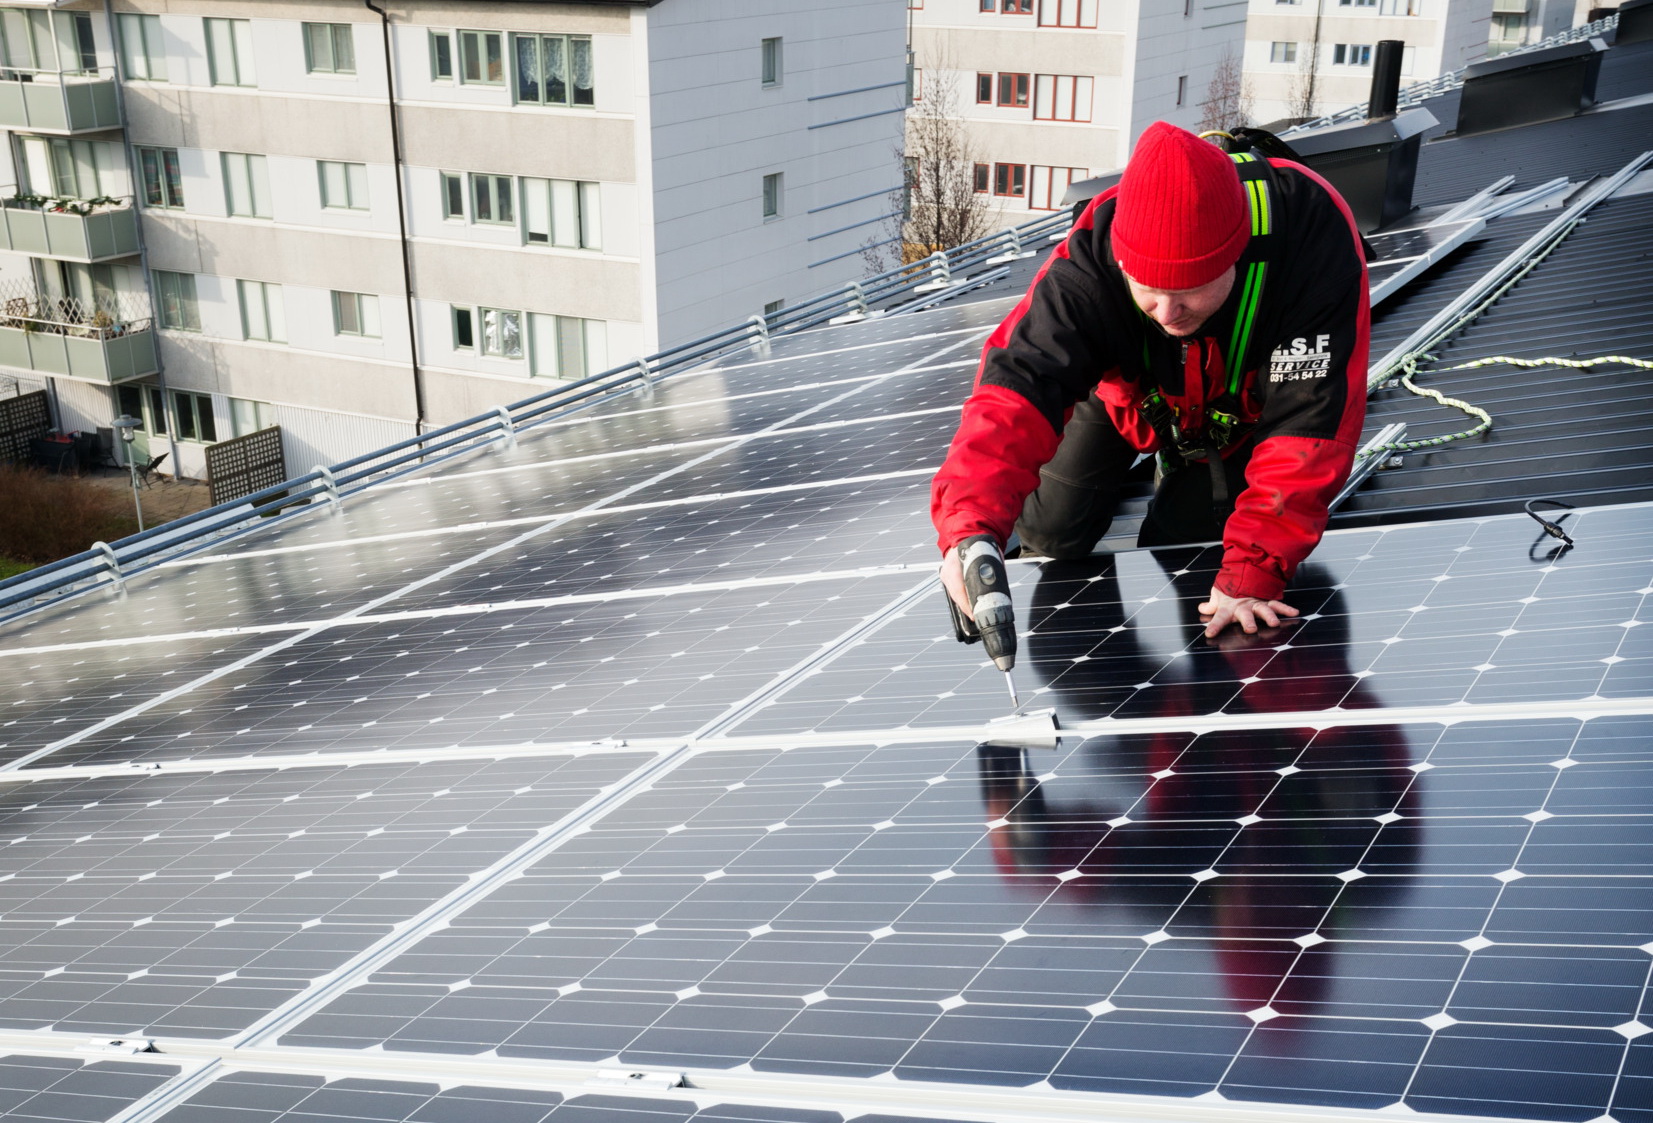 Mặc dù vẫn chiếm một tỷ lệ khiêm tốn trong tổng sản lượng điện nhưng năng  lượng Mặt Trời sẽ góp phần vào giúp Thụy Điển đạt được mục tiêu không phát thải  khí nhà kính vào 2050. (Ảnh: Sofia Sabel/imagebank.sweden.se)